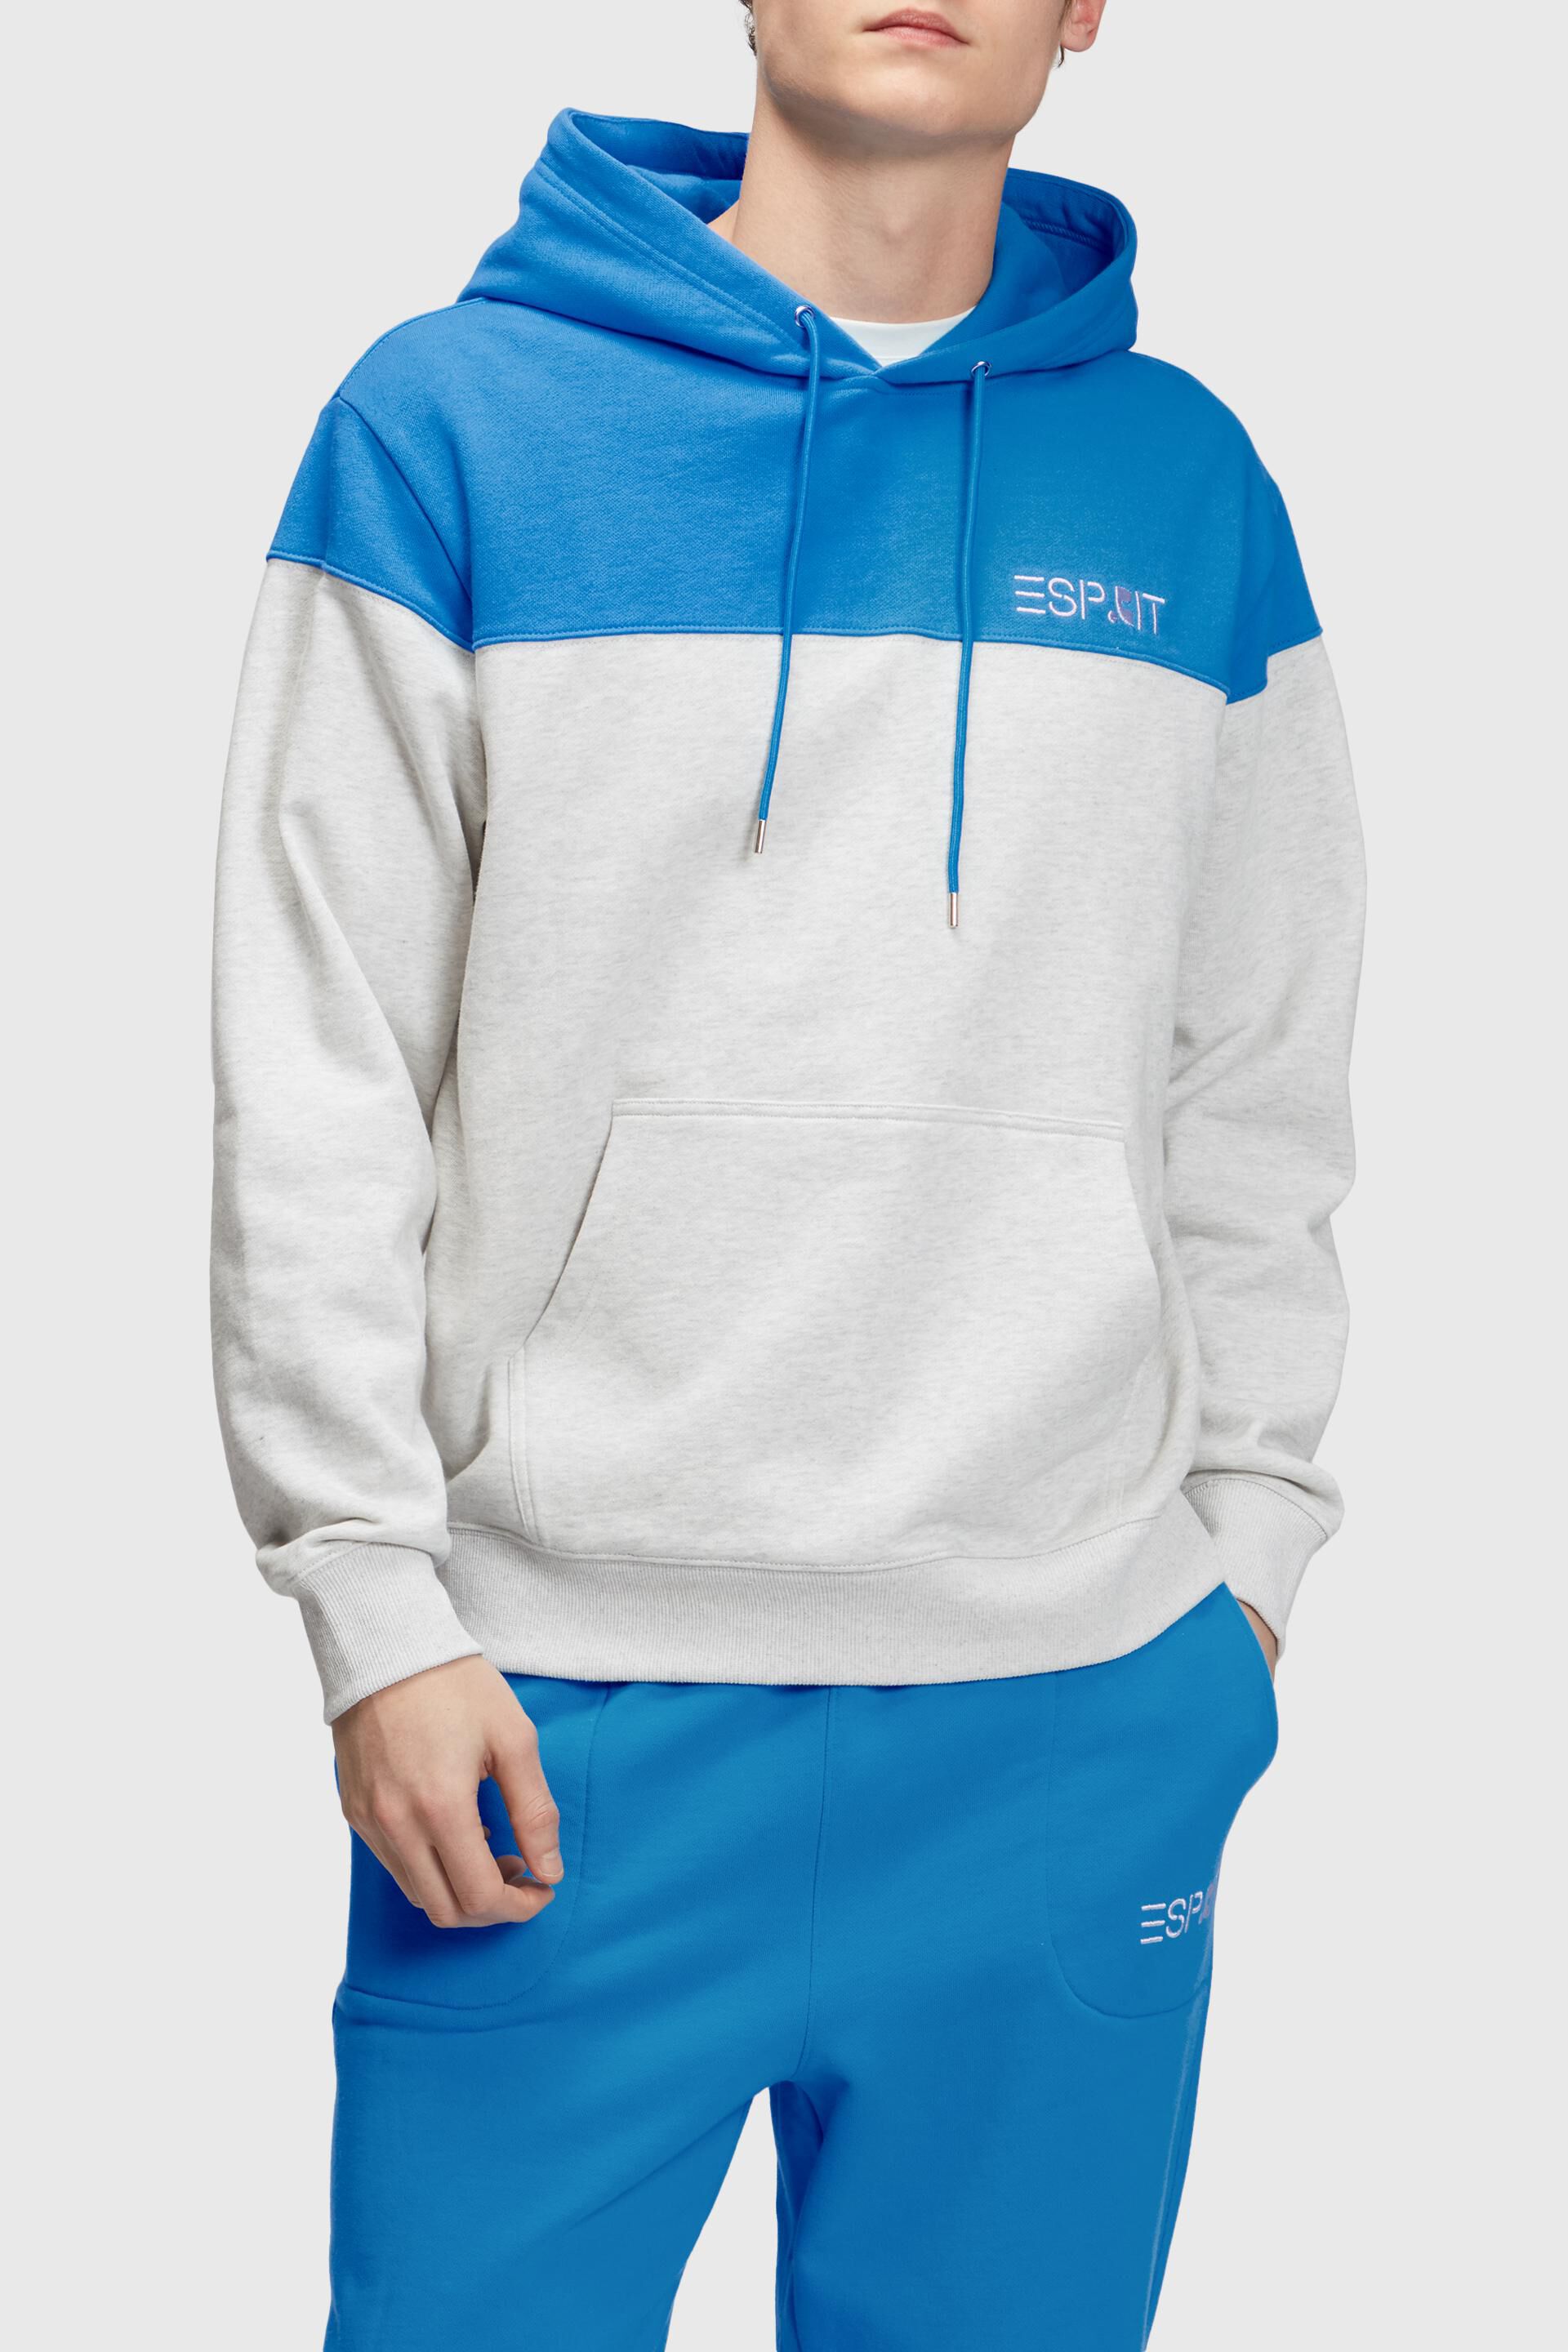 Esprit Colour block hoodie